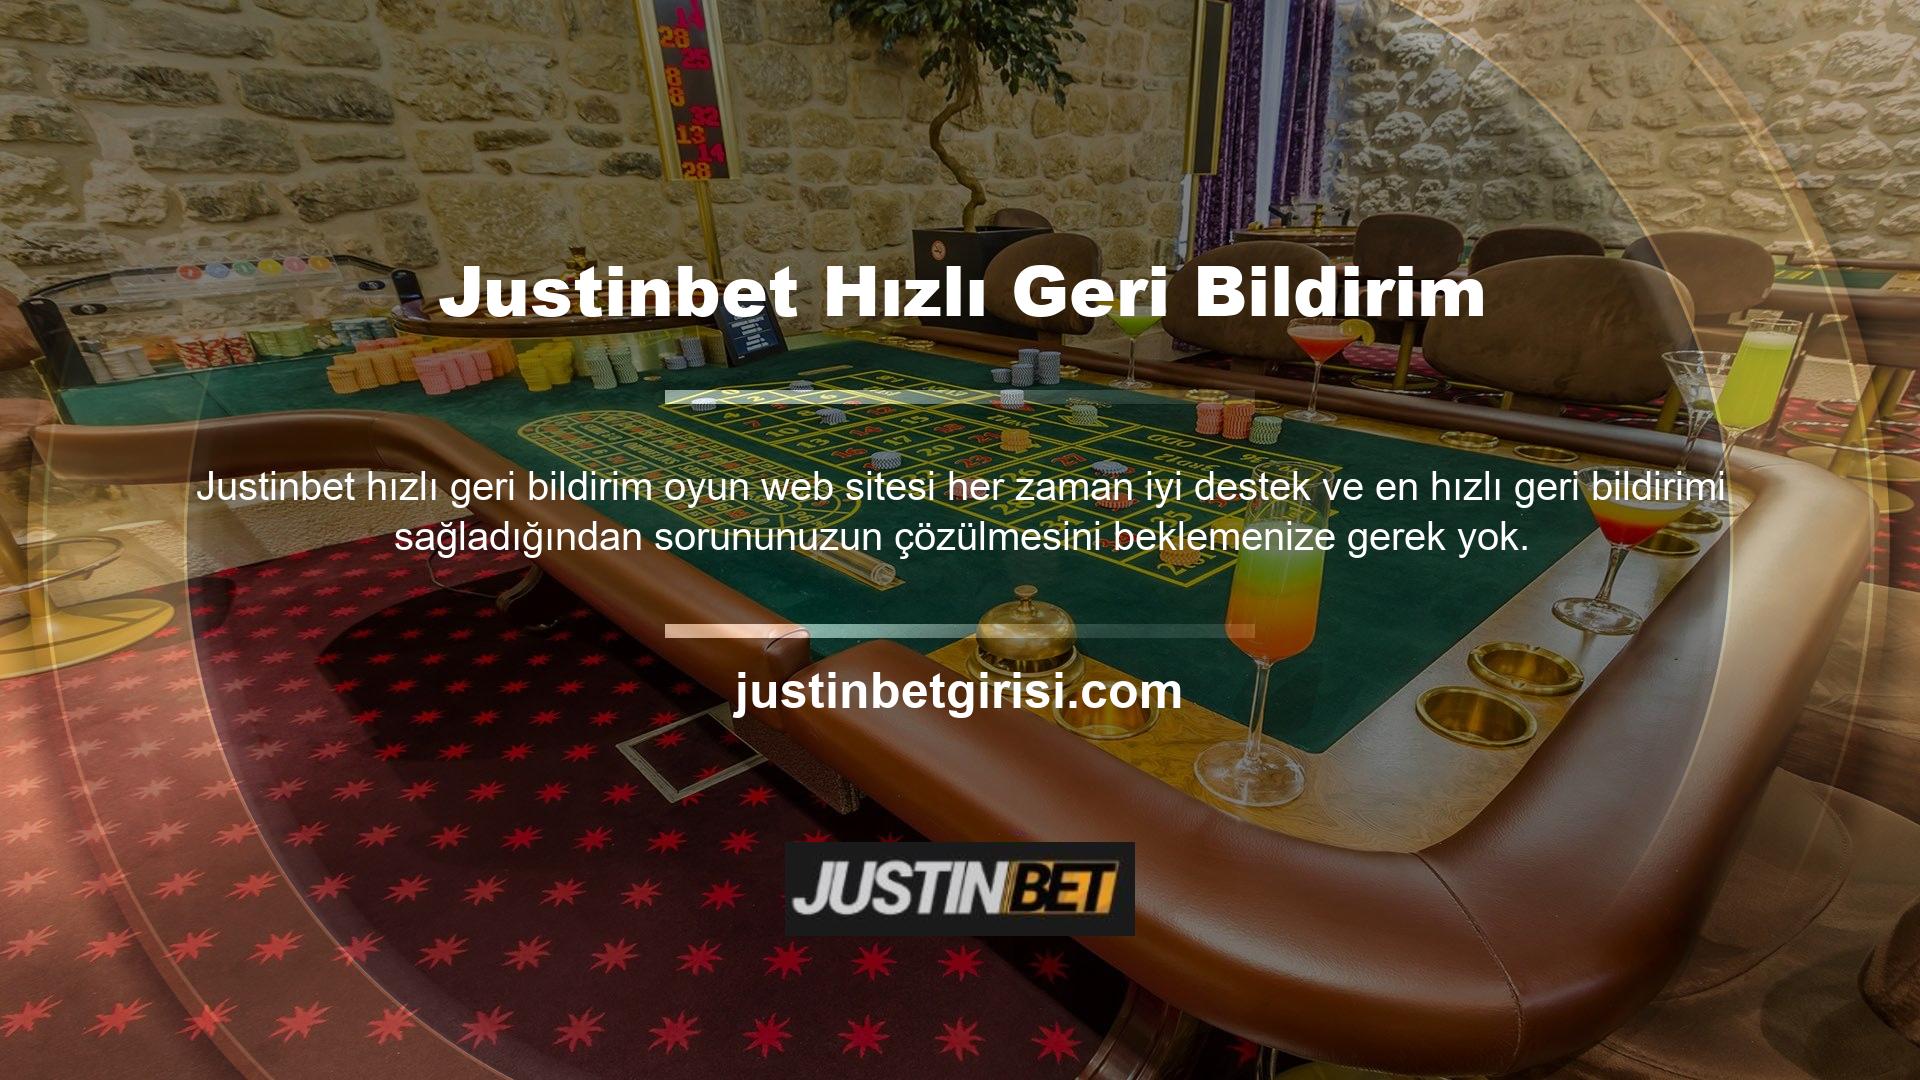 Justinbet bahis sitesi mobil ve masaüstü platformlar için de bahis hizmetleri sunmaktadır